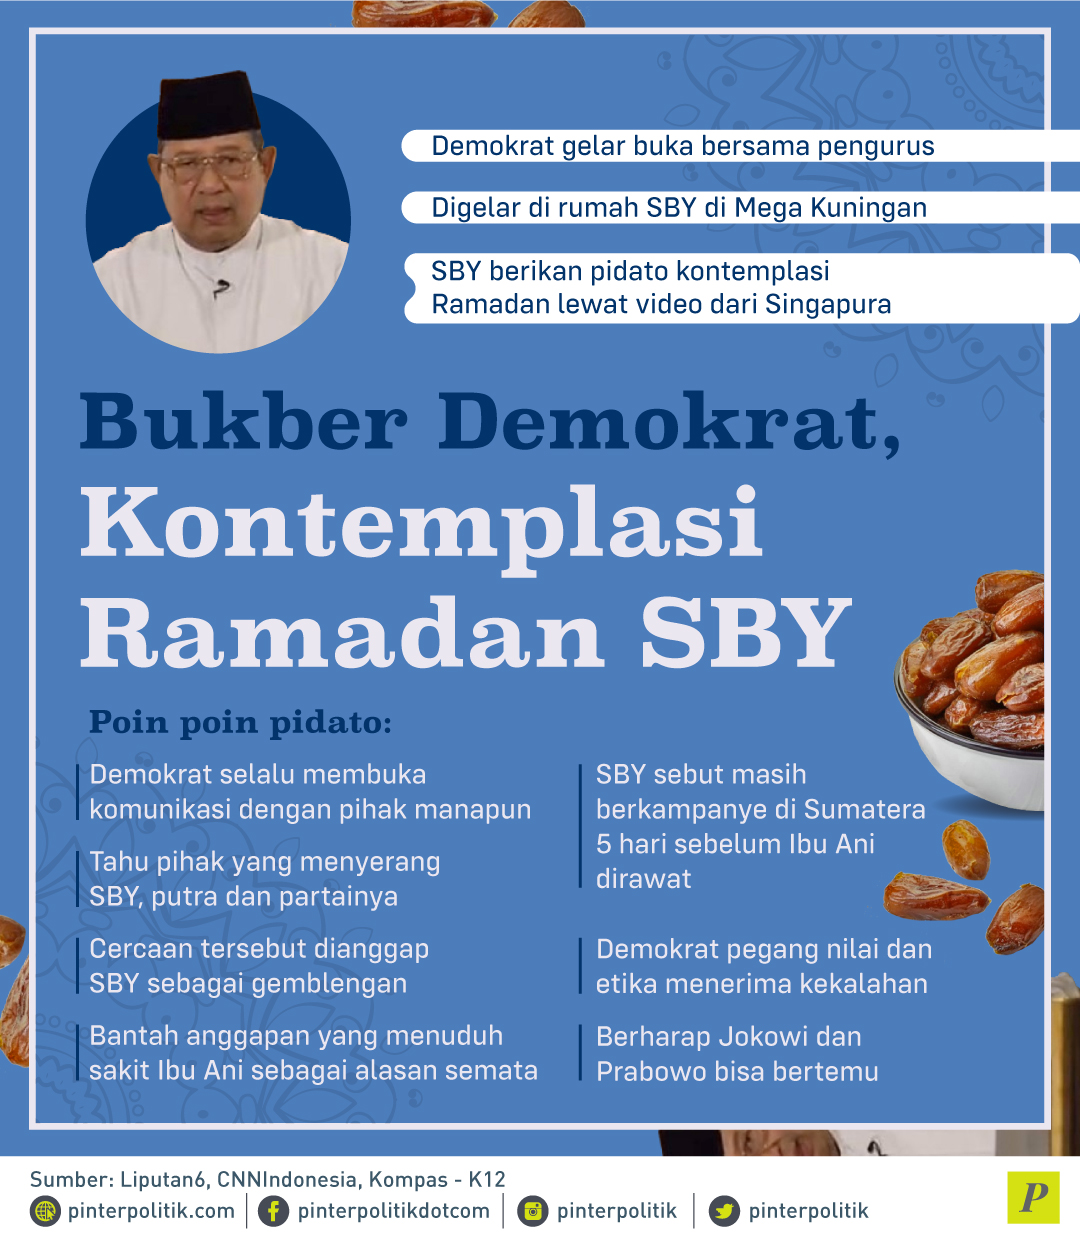 Kontemplasi Ramadan SBY di Bukber Demokrat